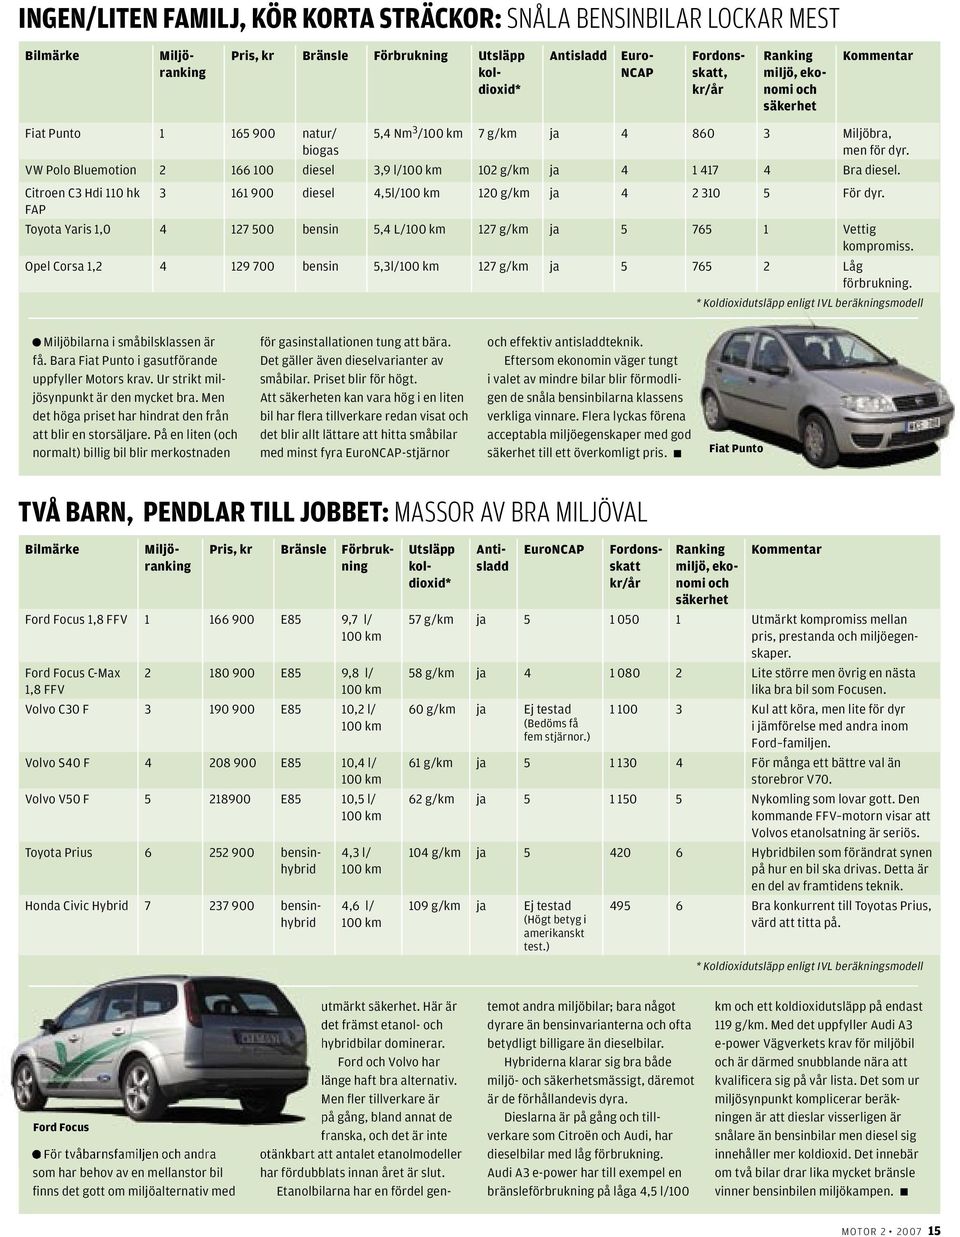 Toyota Yaris 1,0 4 127 500 5,4 L/ 127 g/km ja 5 765 1 Vettig kompromiss. Opel Corsa 1,2 4 129 700 5,3l/ 127 g/km ja 5 765 2 Låg förbrukning. Miljöbilarna i småbilsklassen är få.